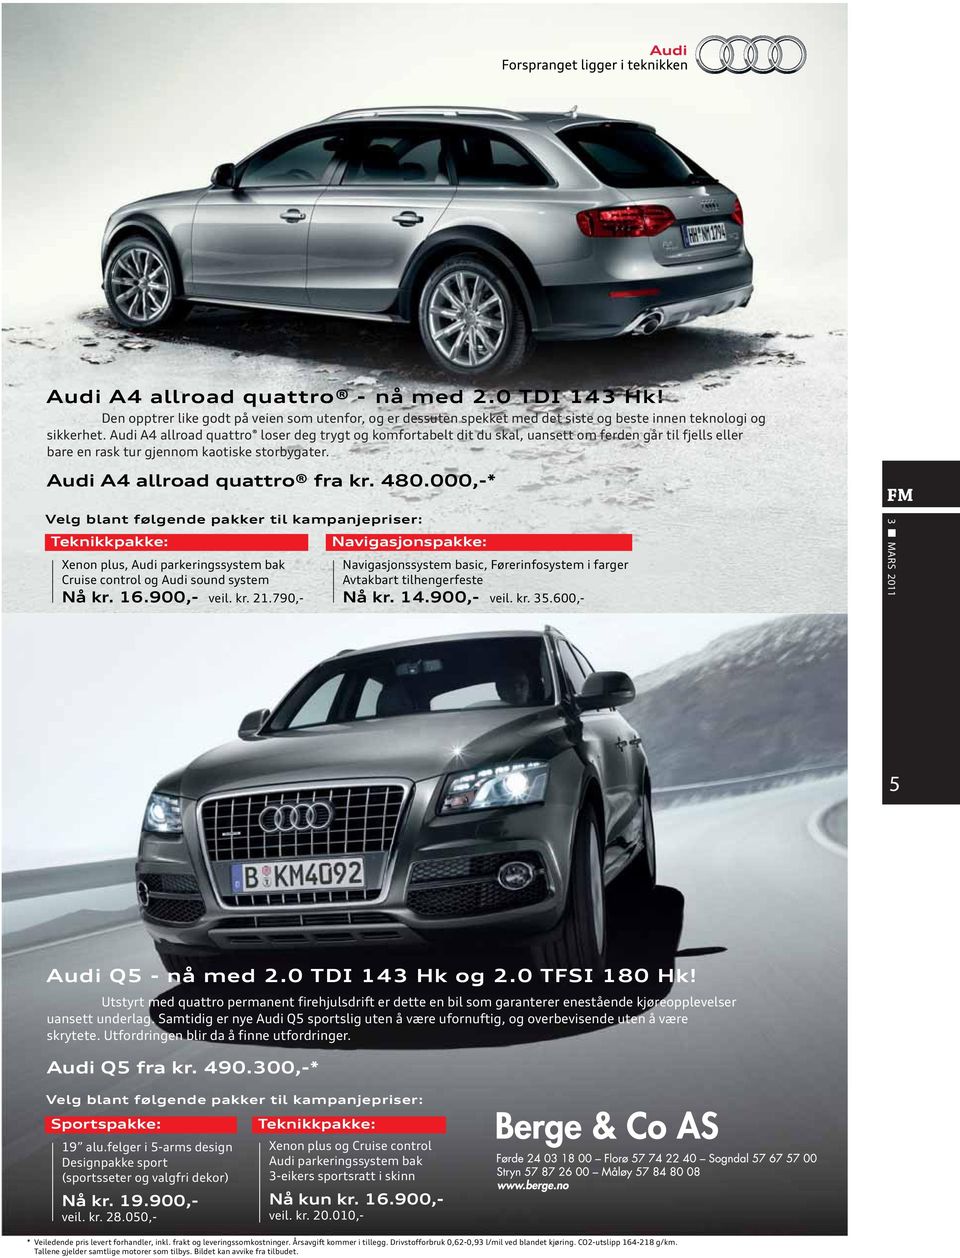 000,-* Velg blant følgende pakker til kampanjepriser: Teknikkpakke: Xenon plus, Audi parkeringssystem bak Cruise control og Audi sound system Nå kr. 16.900,- veil. kr. 21.